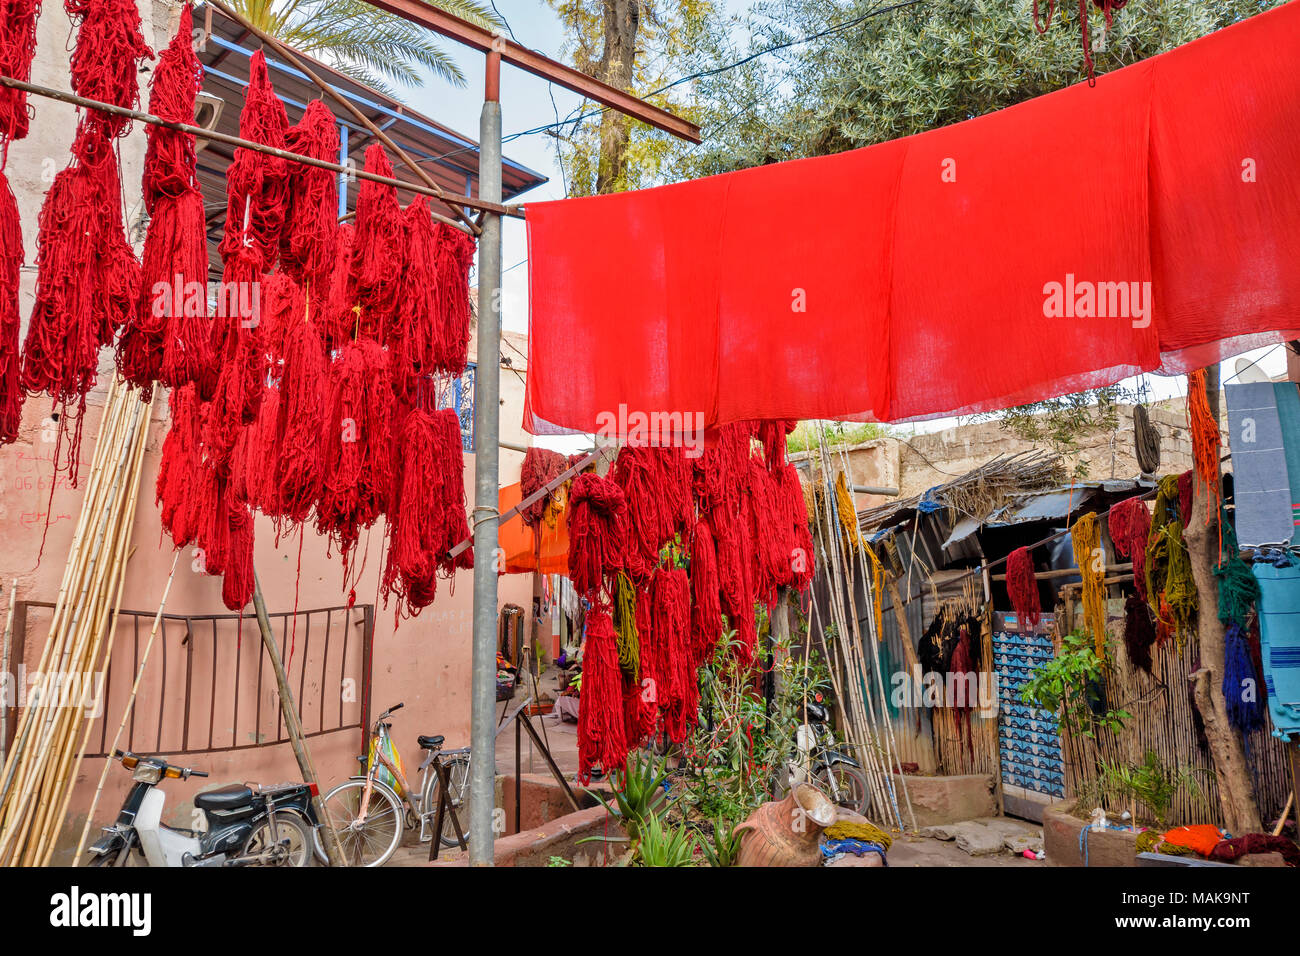 Il Marocco Marrakech Jemaa el Fna MEDINA SOUK arancione fogli tinti e lana multicolore appesi da poli di bambù per asciugare al sole Foto Stock